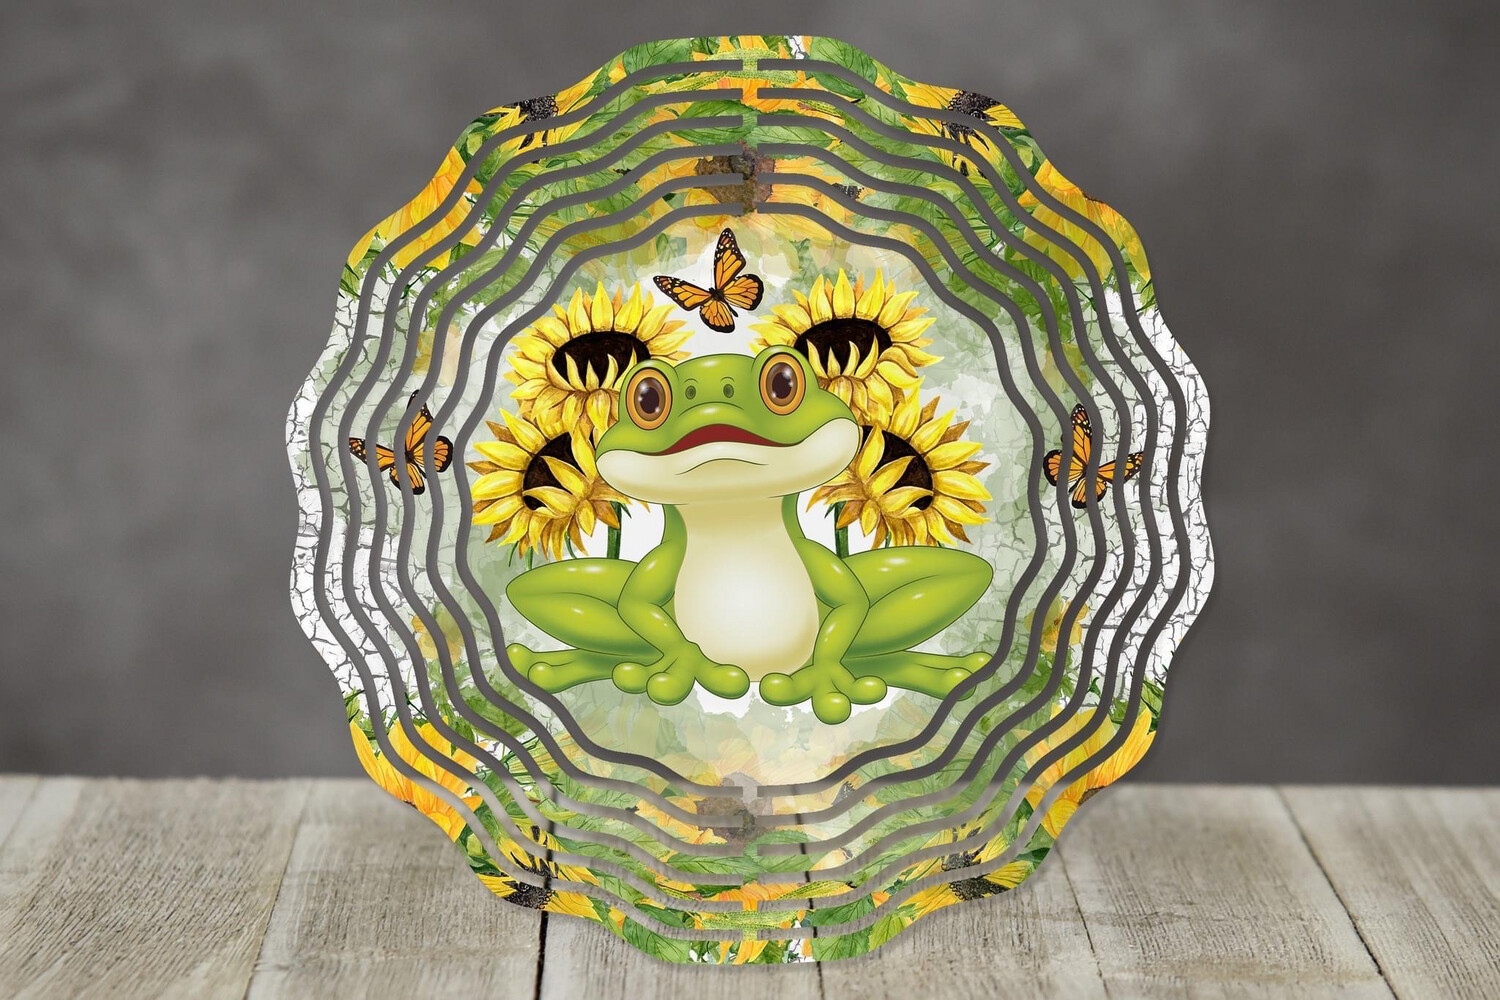 10” Aluminum Sunflower Frog Wind Spinner